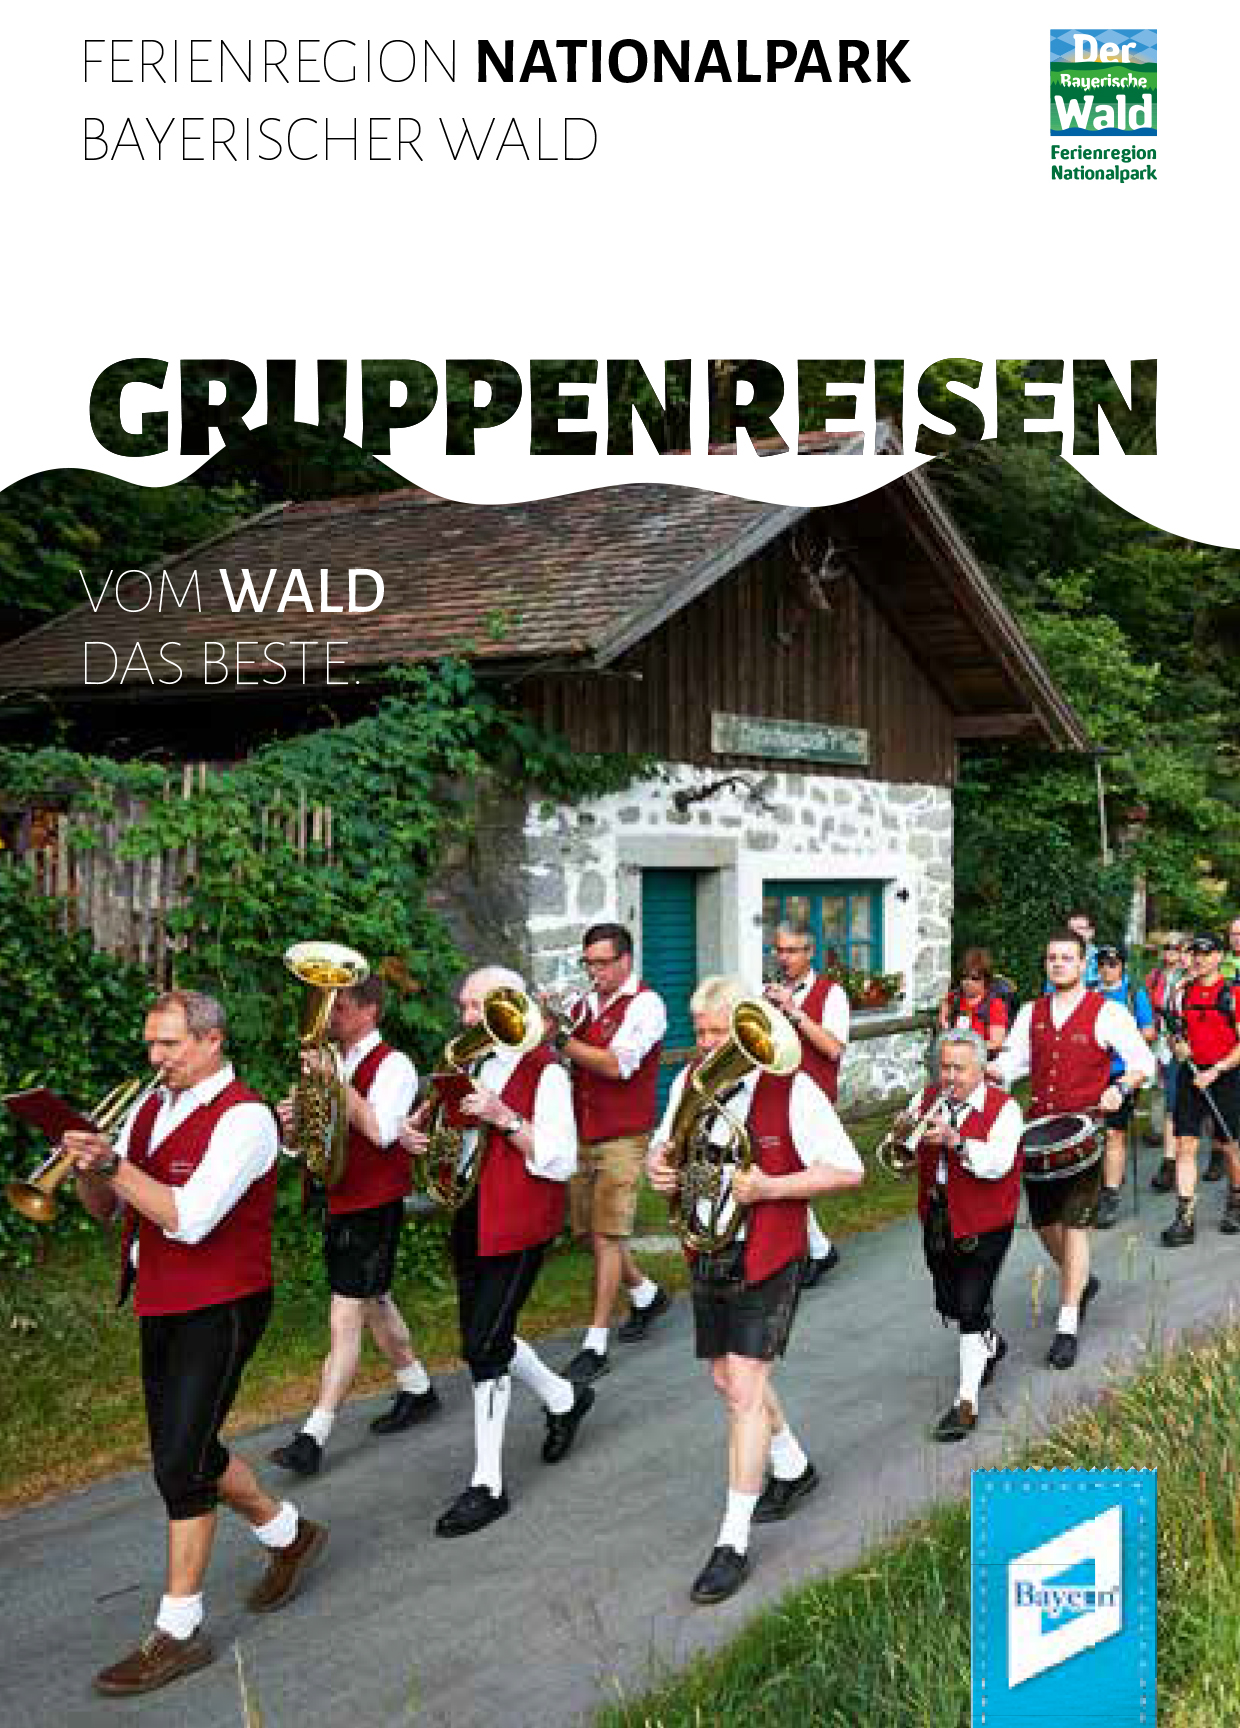 Gruppenreisen in der Ferienregion Nationalpark Bayerischer Wald, Pocketguide